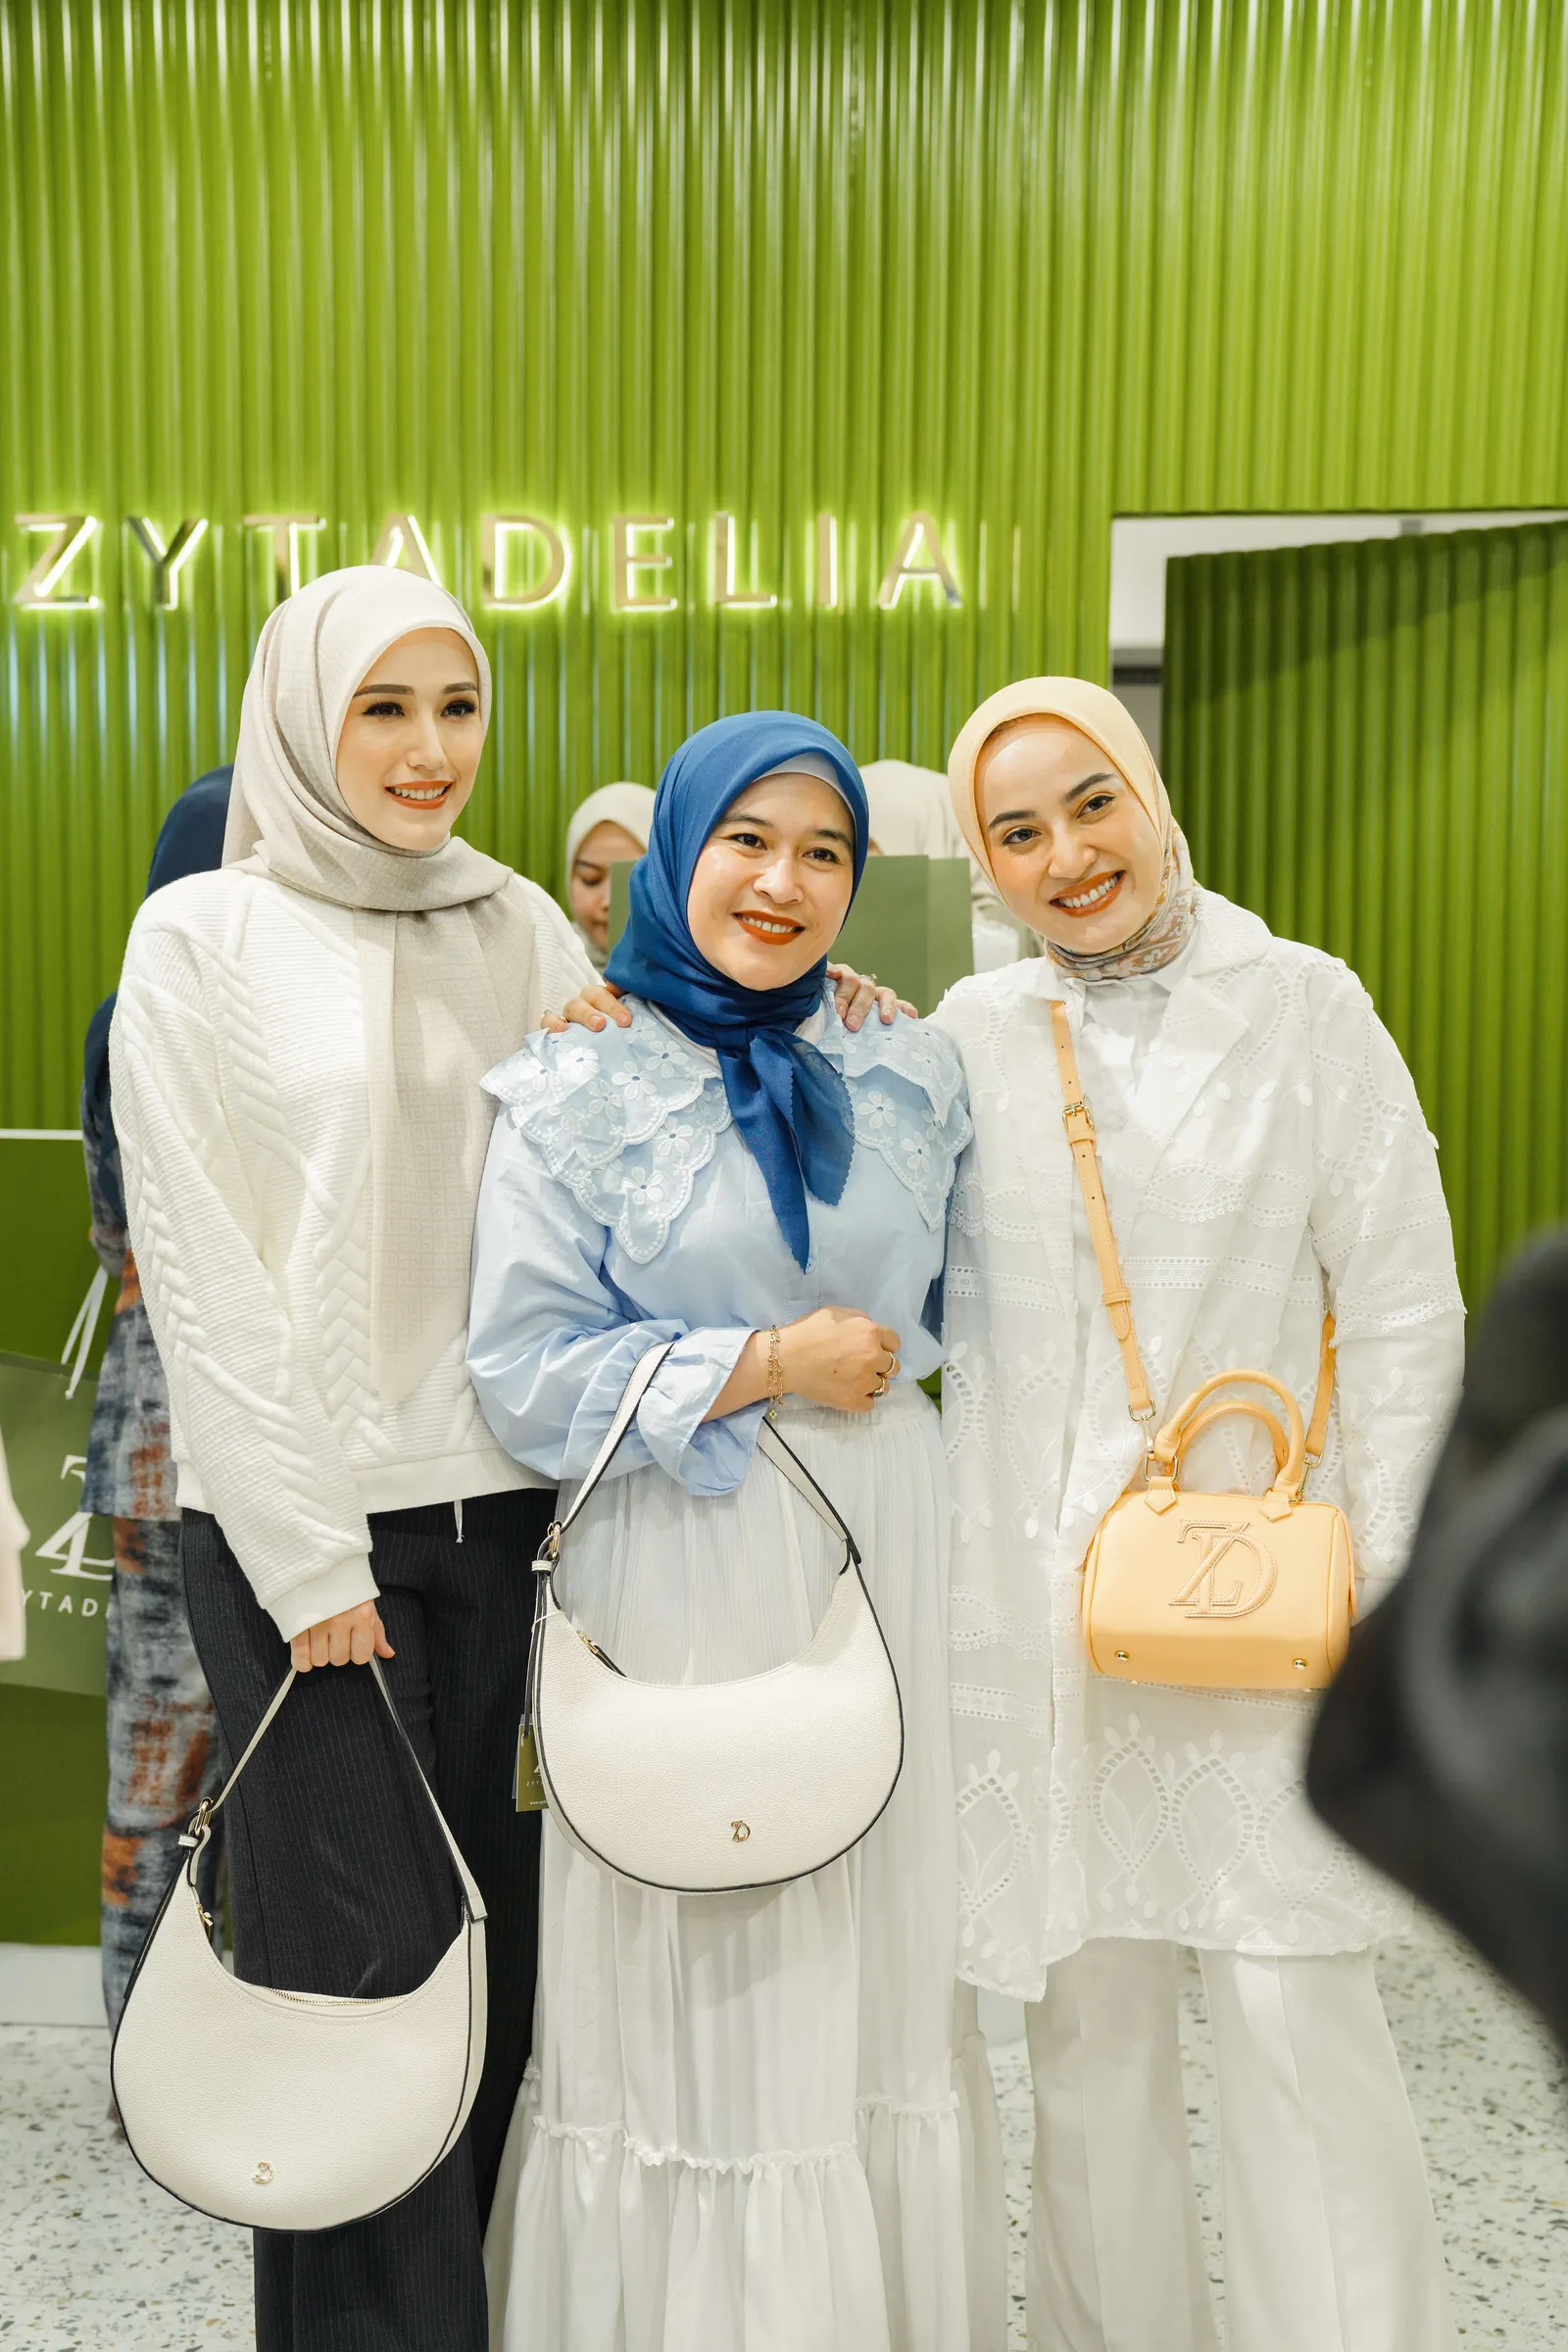 Zyta Delia Rayakan Pembukaan Toko Terbaru di Pondok Indah Mall